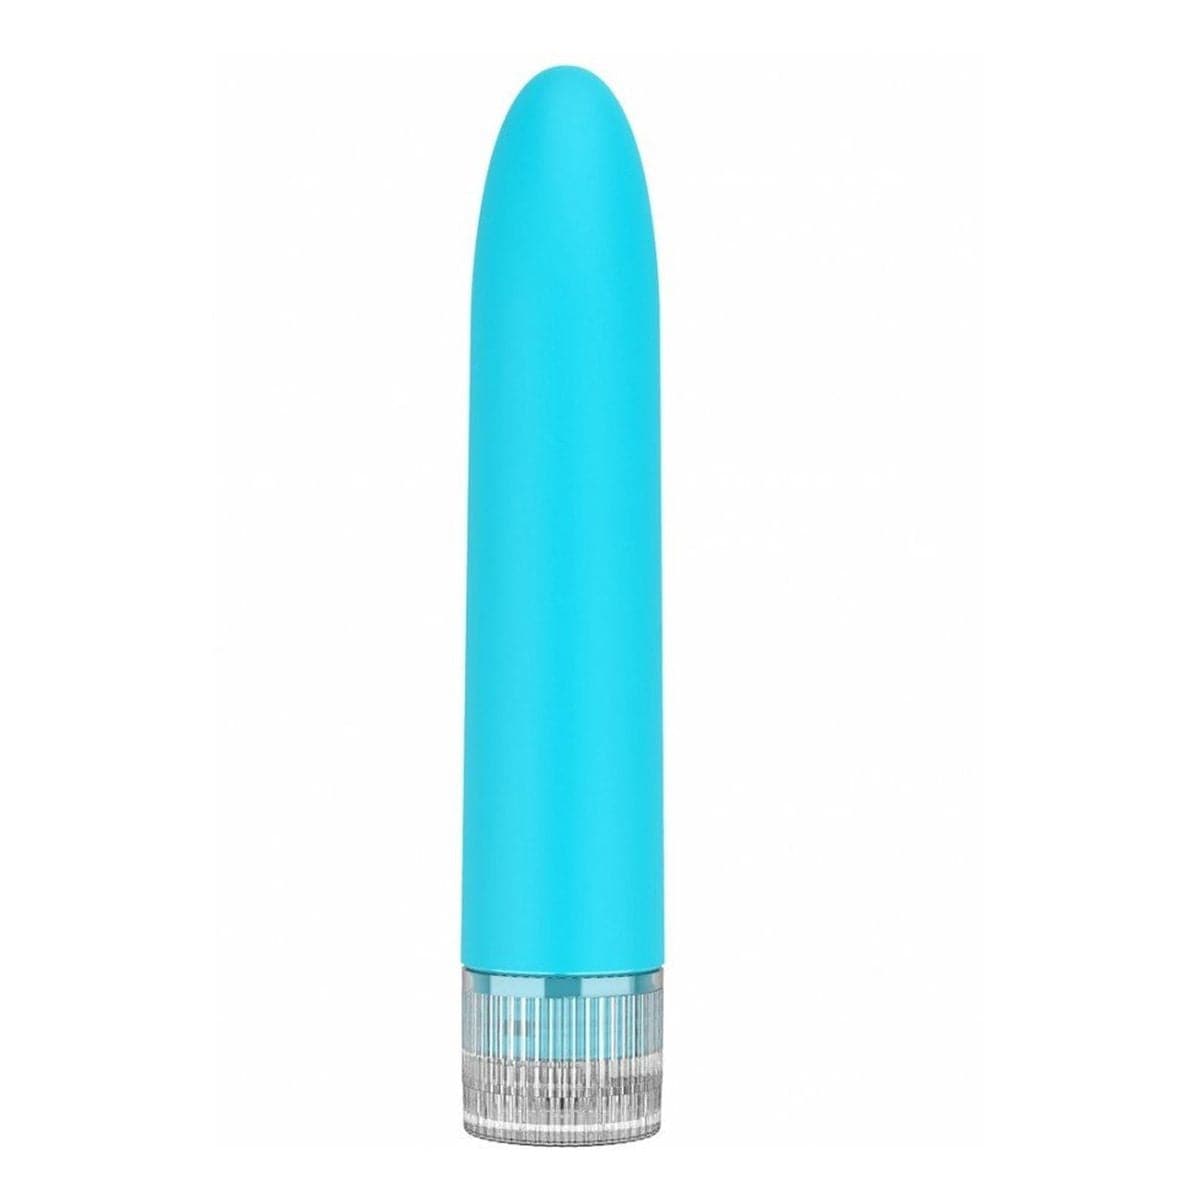 Vibrador Clássico Eleni Azul Super Soft 13,9cm Ø3,6cm - Vibração Regulável